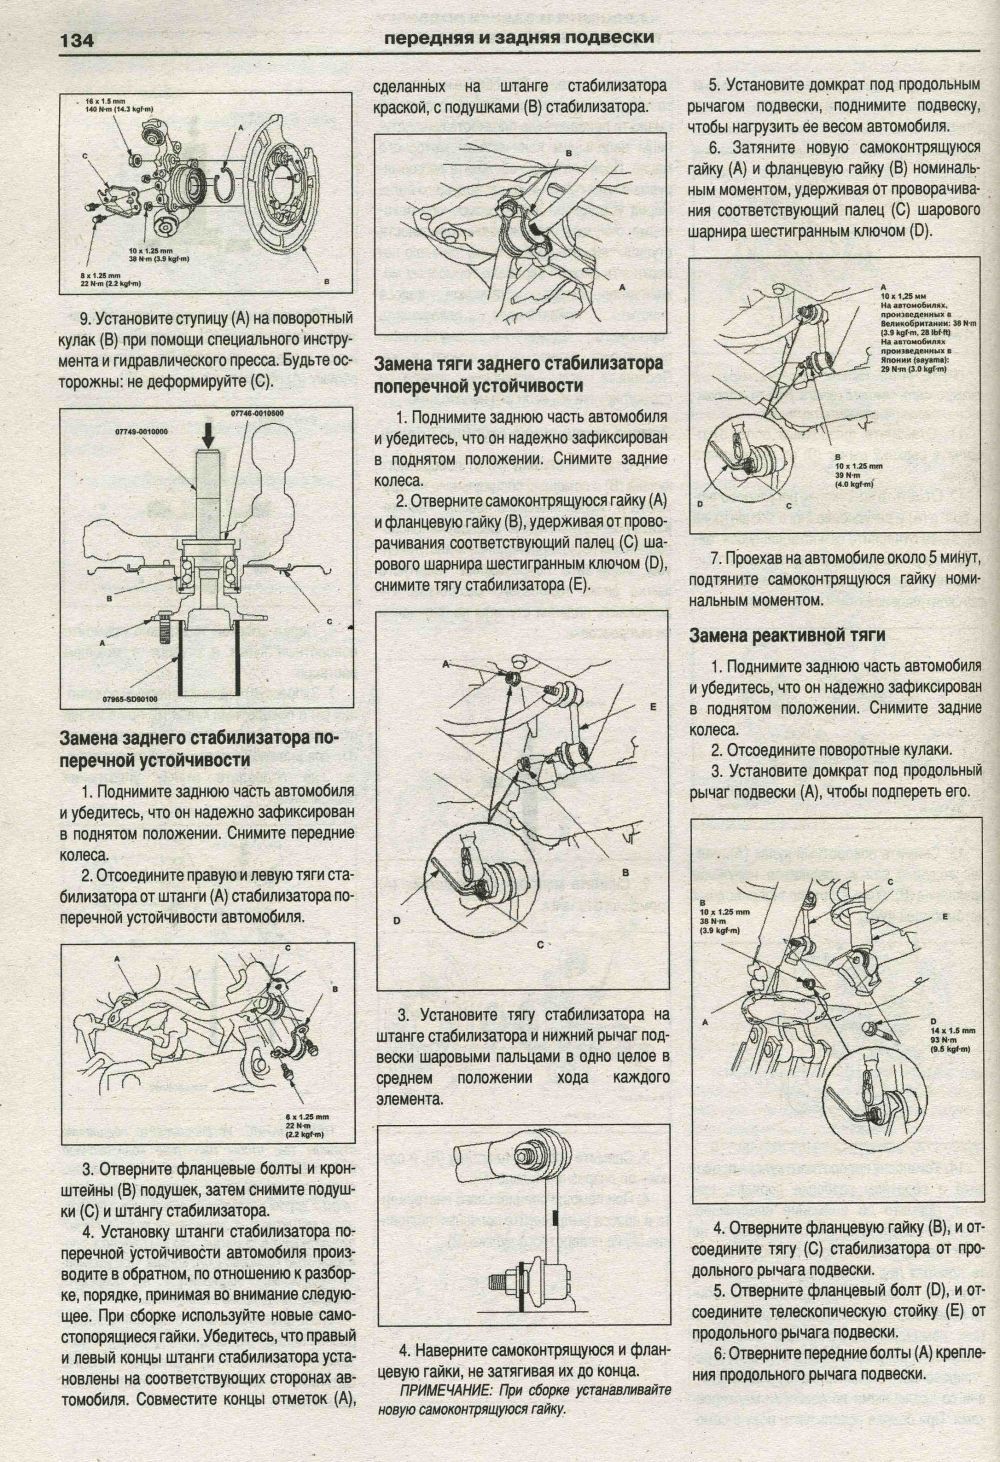 Книга Honda CR-V 2001-2007 бензин, электросхемы. Руководство по ремонту и эксплуатации автомобиля. Атласы автомобилей